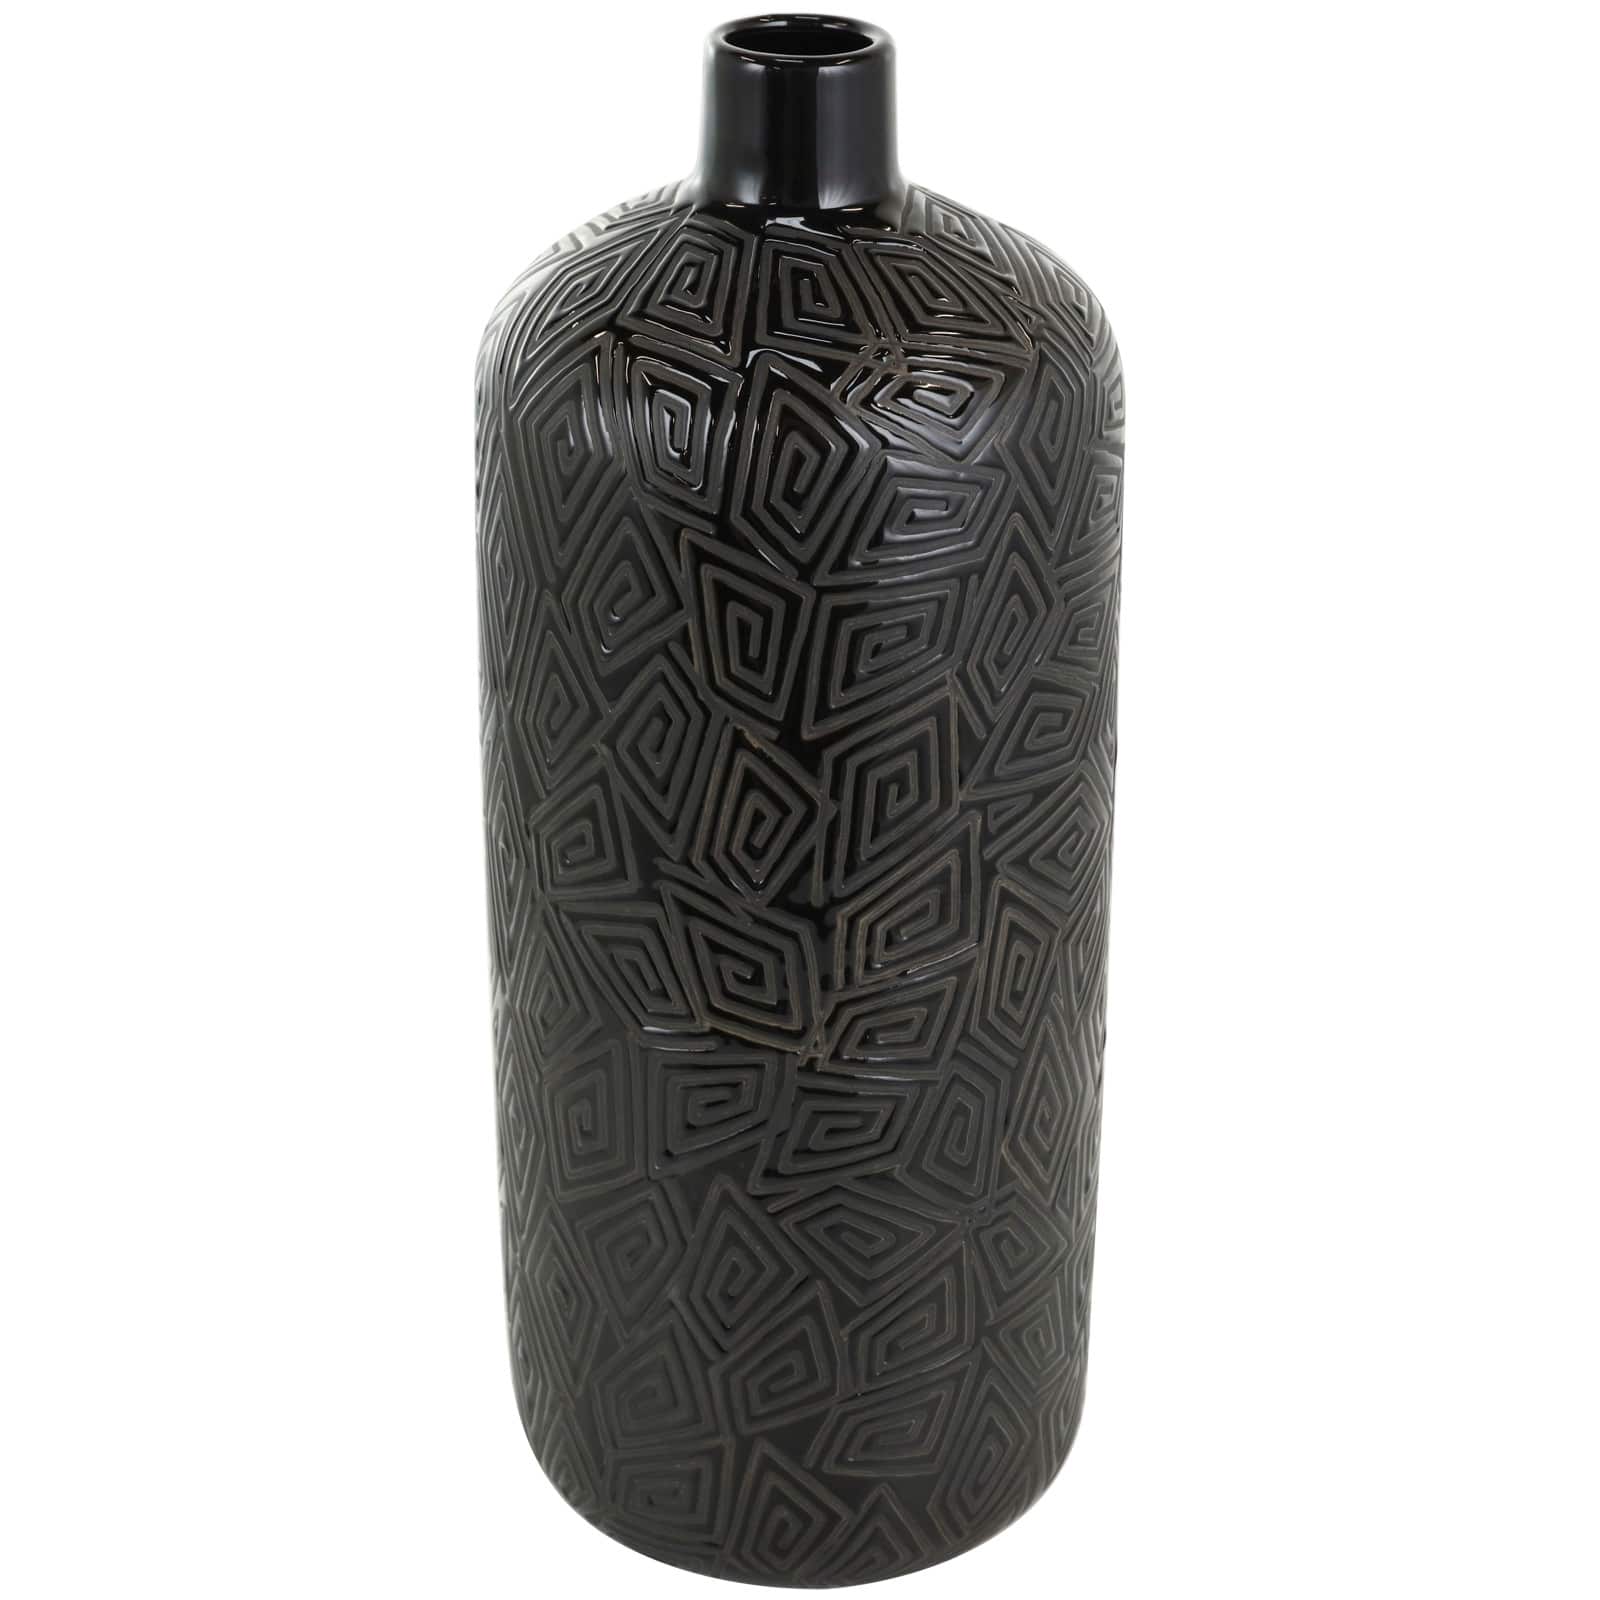 19&#x22; Black Geometric Etched Ceramic Vase